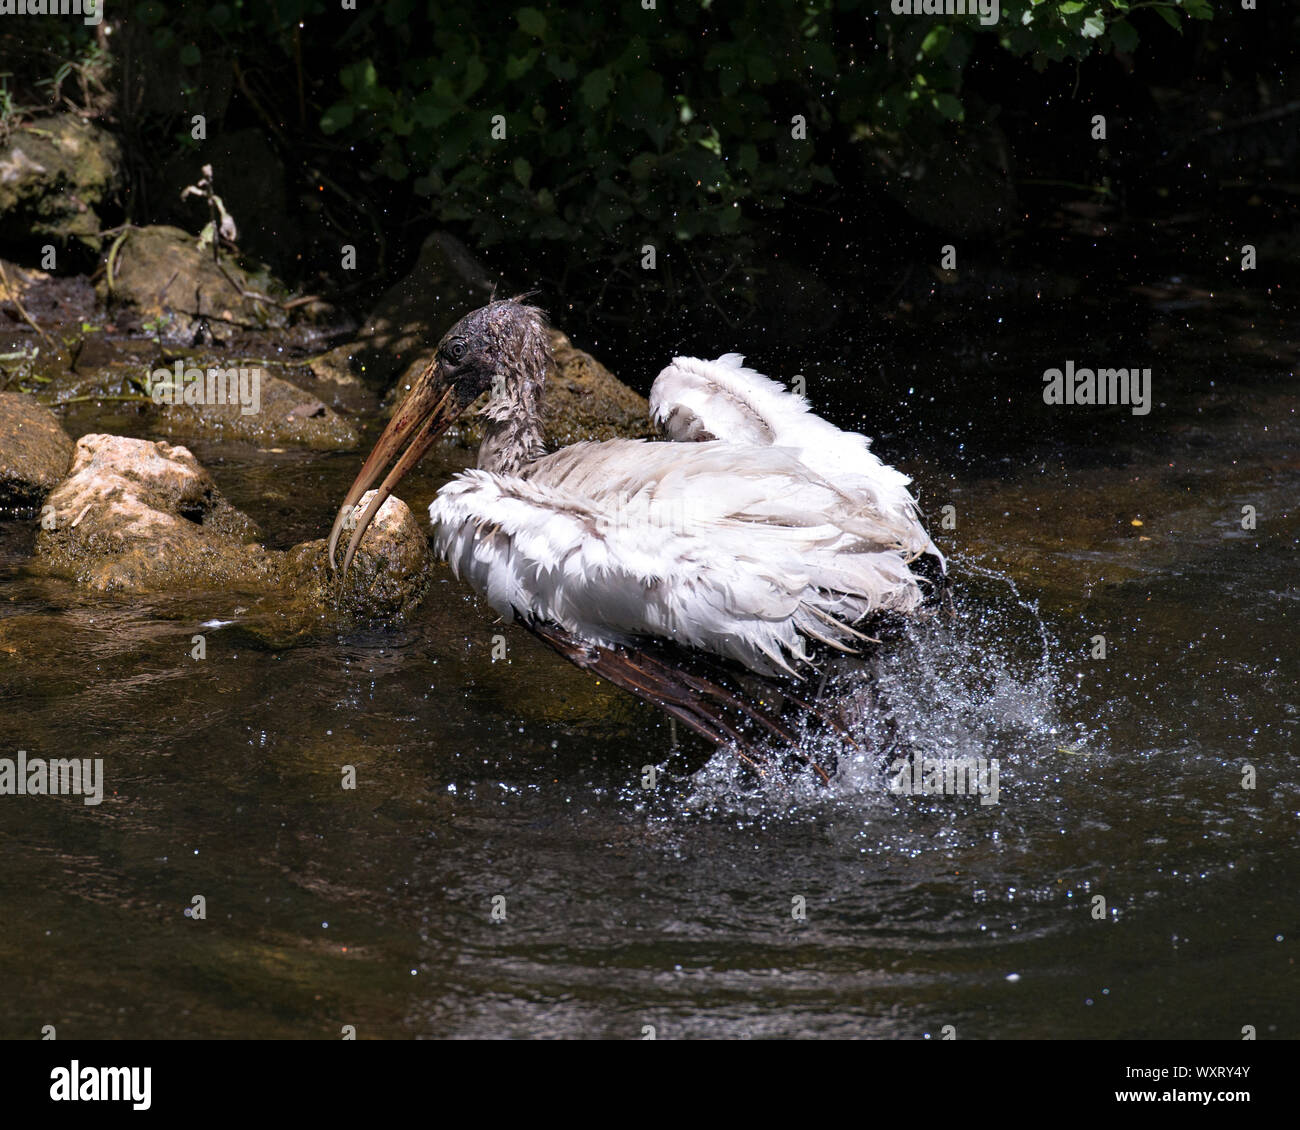 Holz Stork unreifen Vogel Baden im Fluss mit einem Hintergrund der Felsen in der Umgebung und die Umwelt. Stockfoto